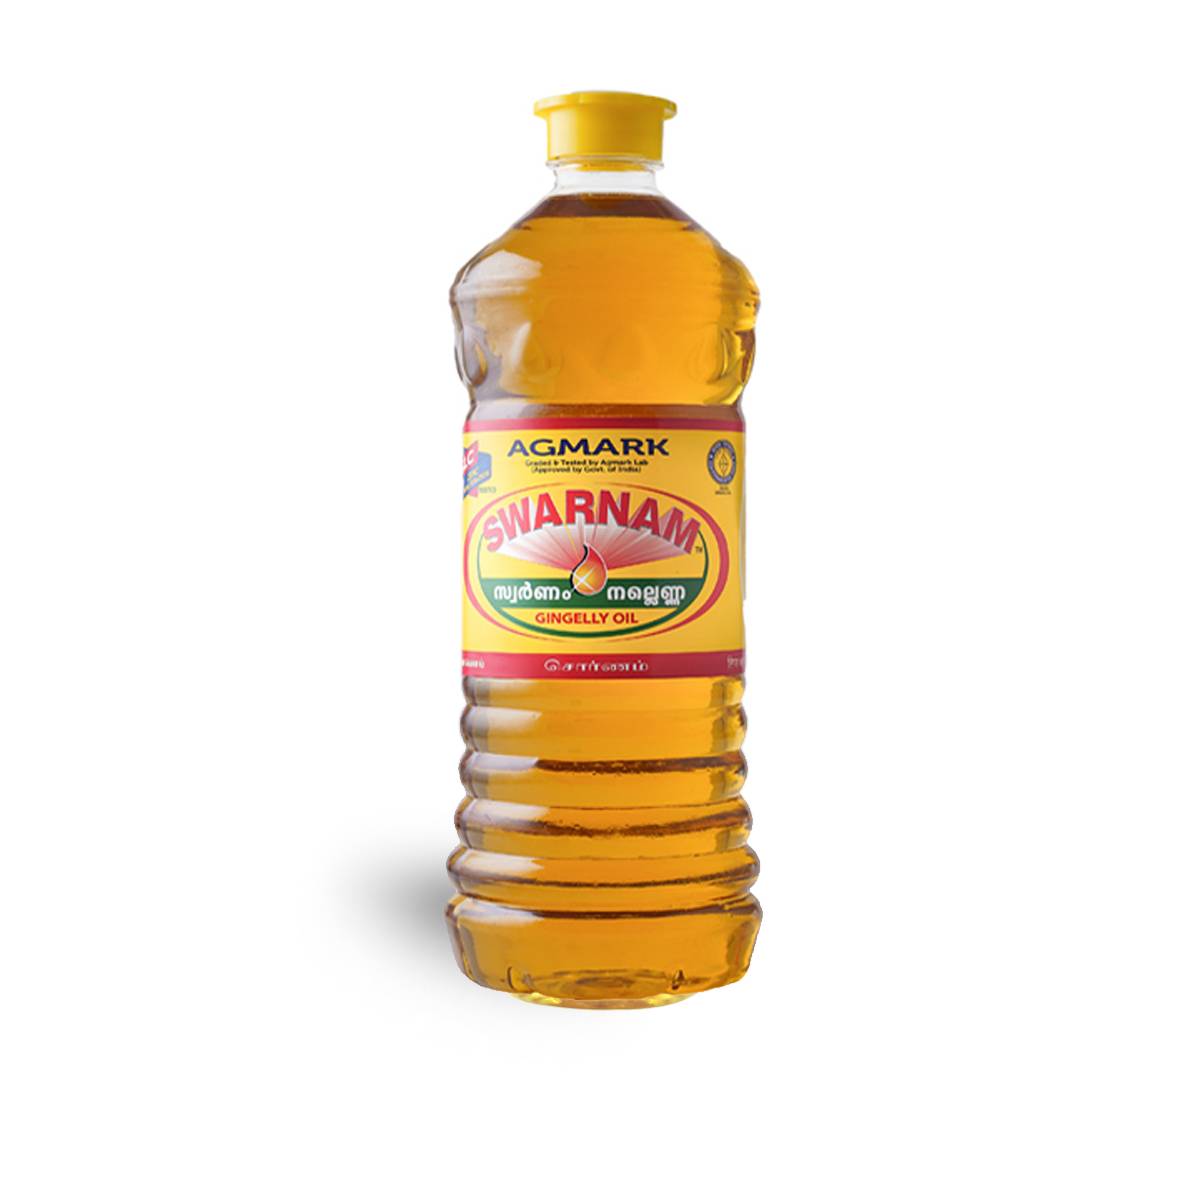 Swarnam Sesame oil 1L